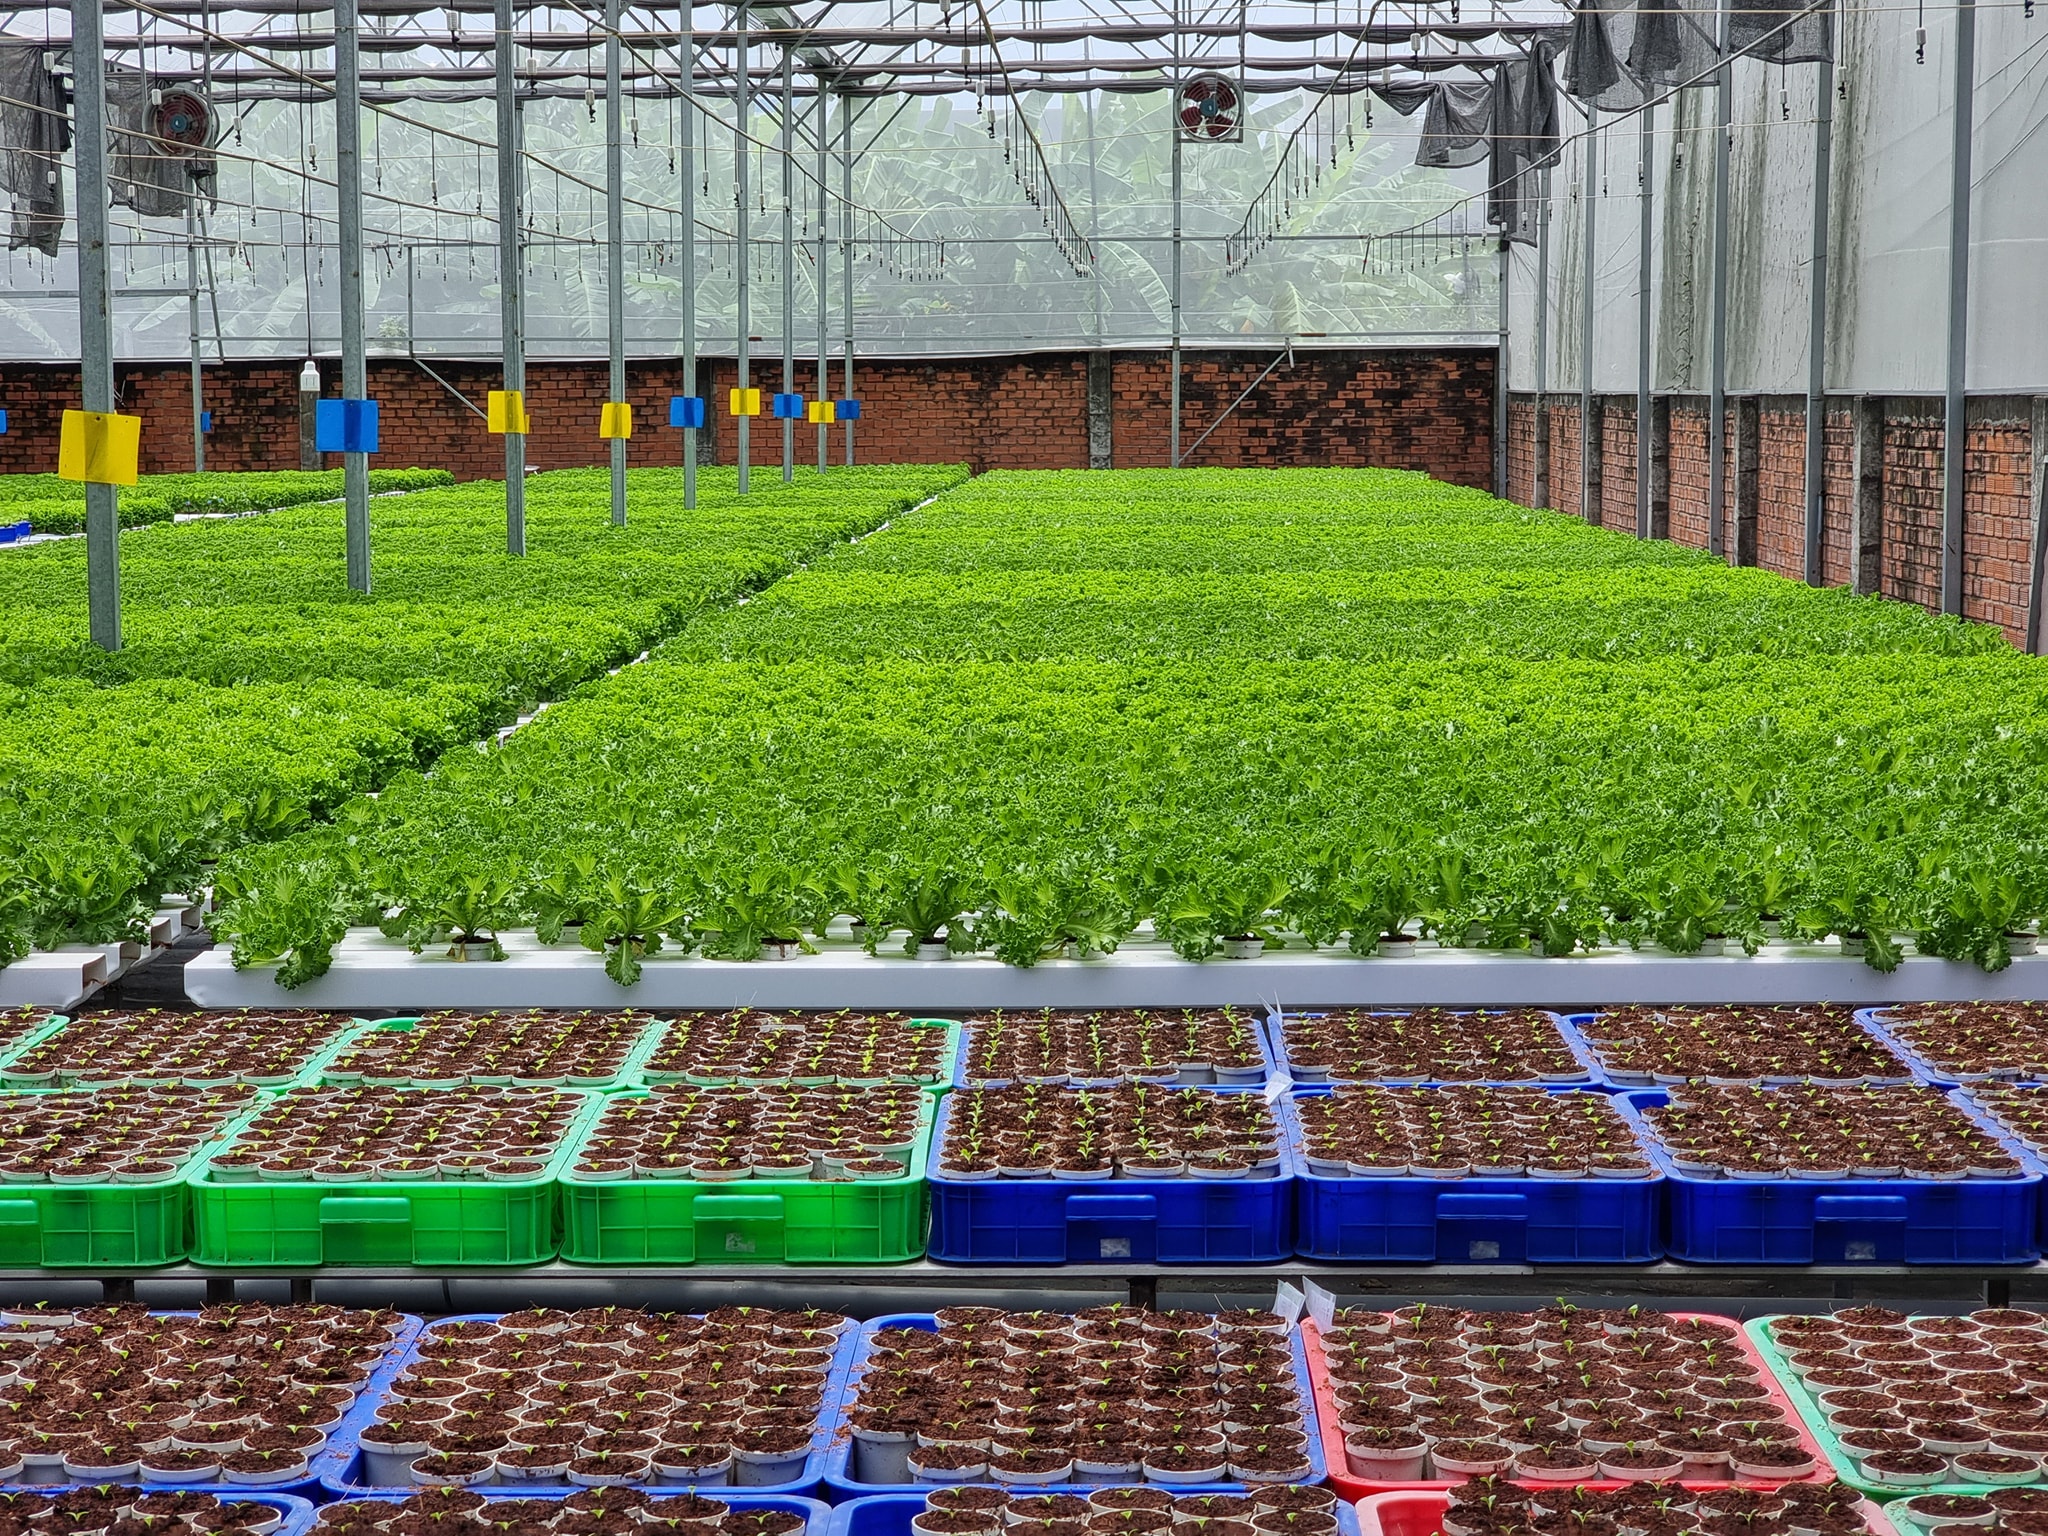 Nhà màng chống bão  giải pháp vượt trội hỗ trợ nông nghiệp công nghệ cao   Báo điện tử Bình Định